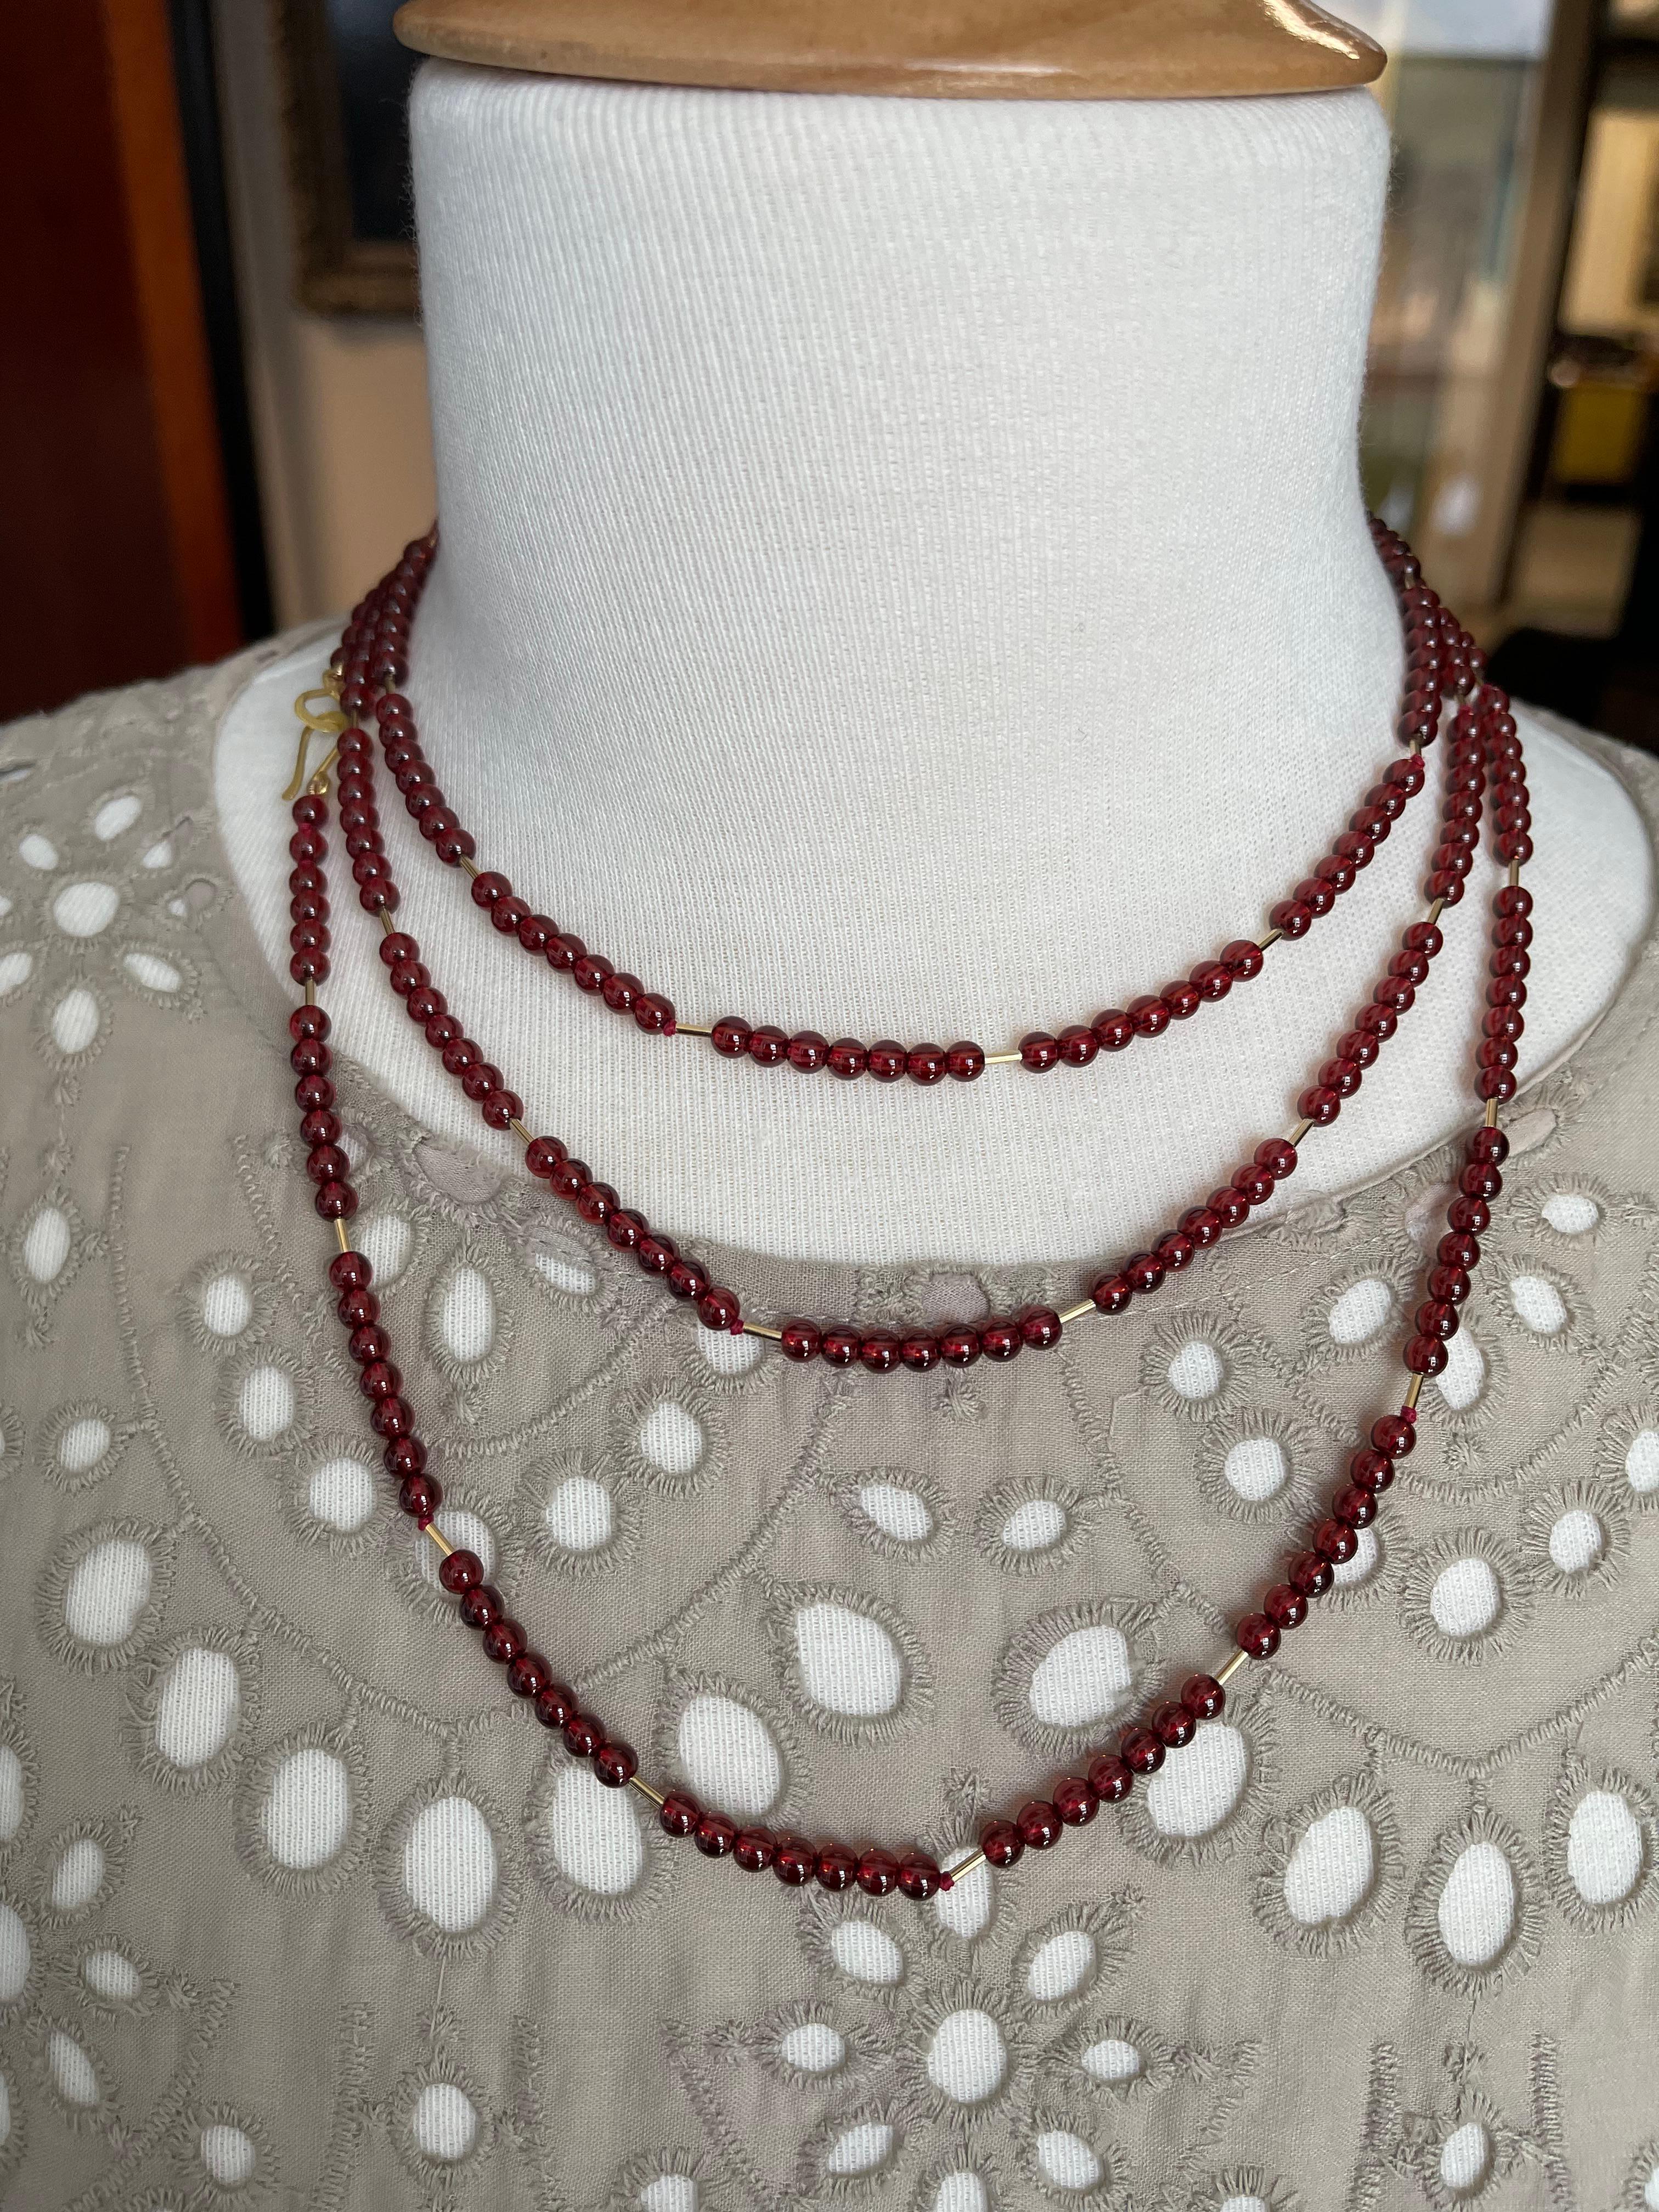 Preiselbeer-Granat-Seil-Halskette mit Gelbgold-Akzenten und Verschluss, 54 Zoll für Damen oder Herren im Angebot